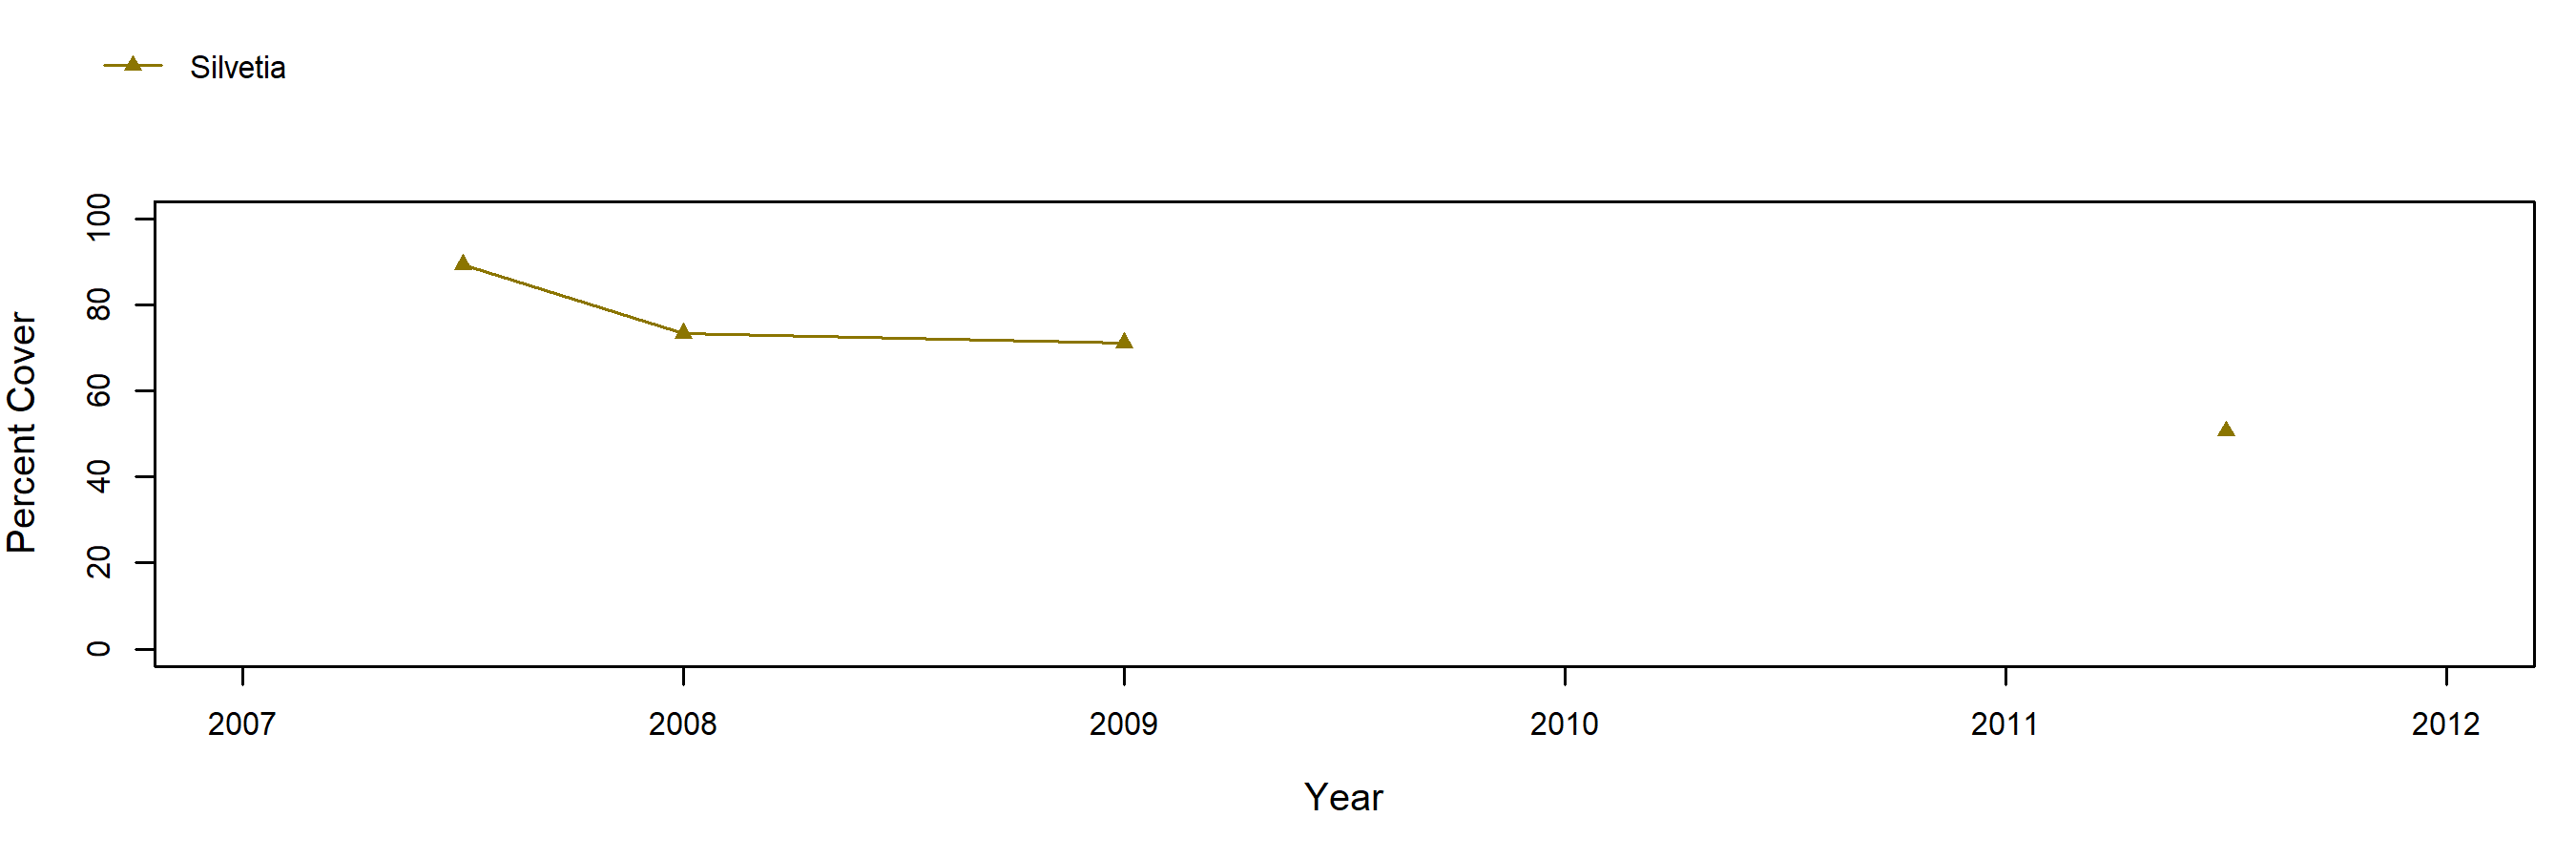 Davenport Landing Silvetia trend plot